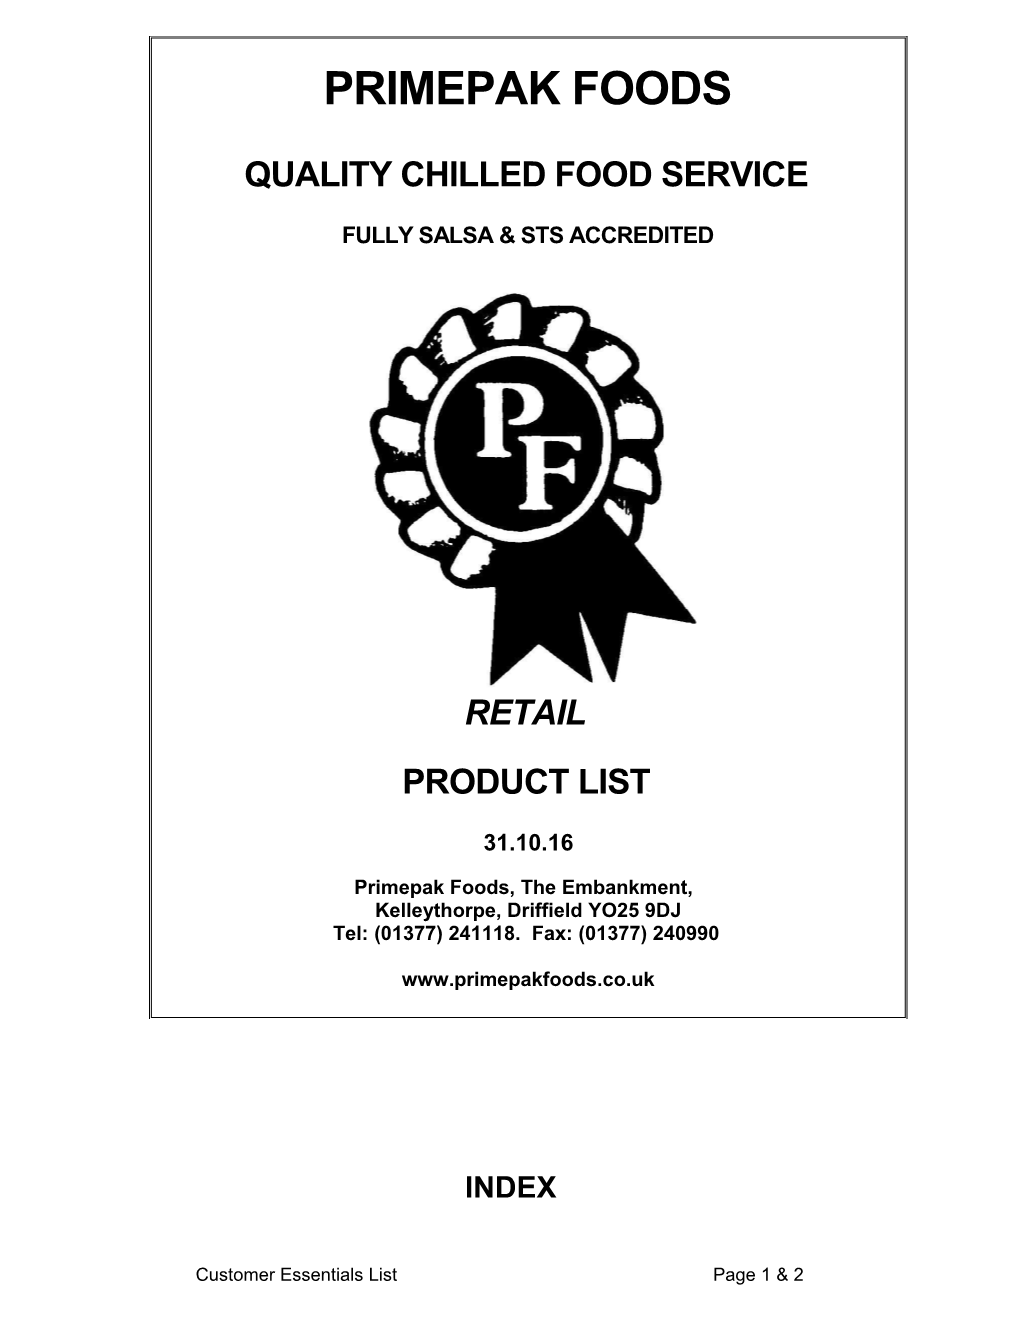 Primepak Foods Ltd